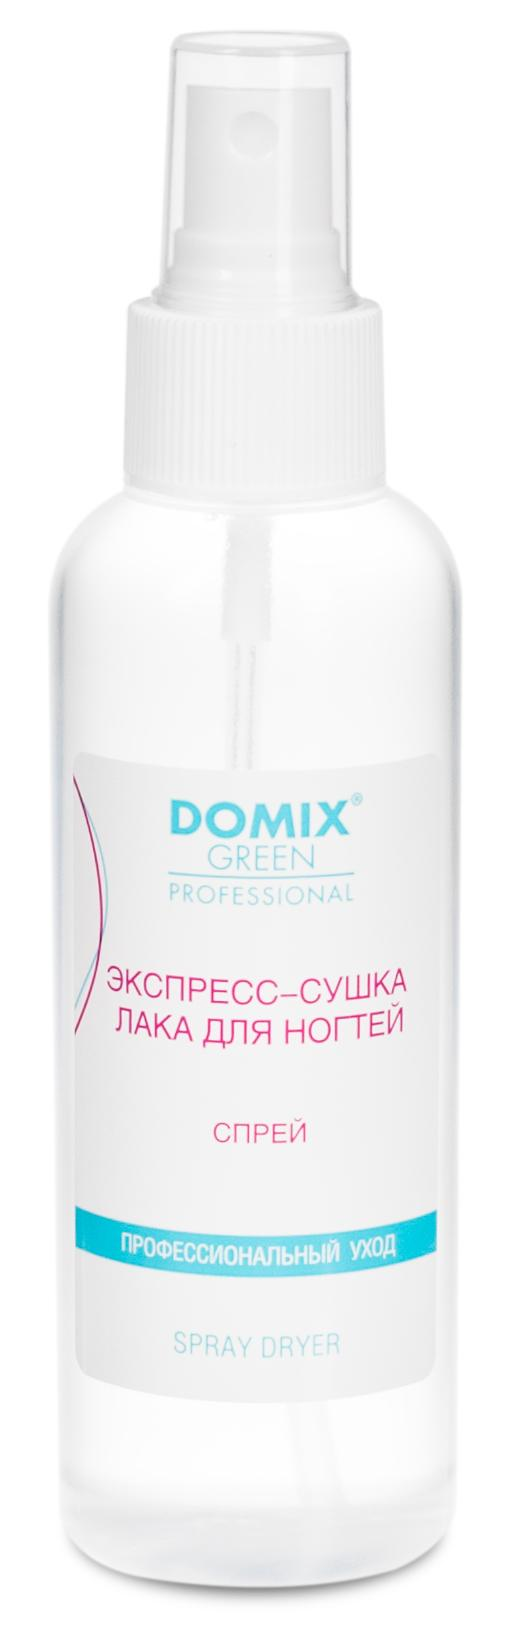 DOMIX Экспресс-сушка спрей / DGP 150 мл